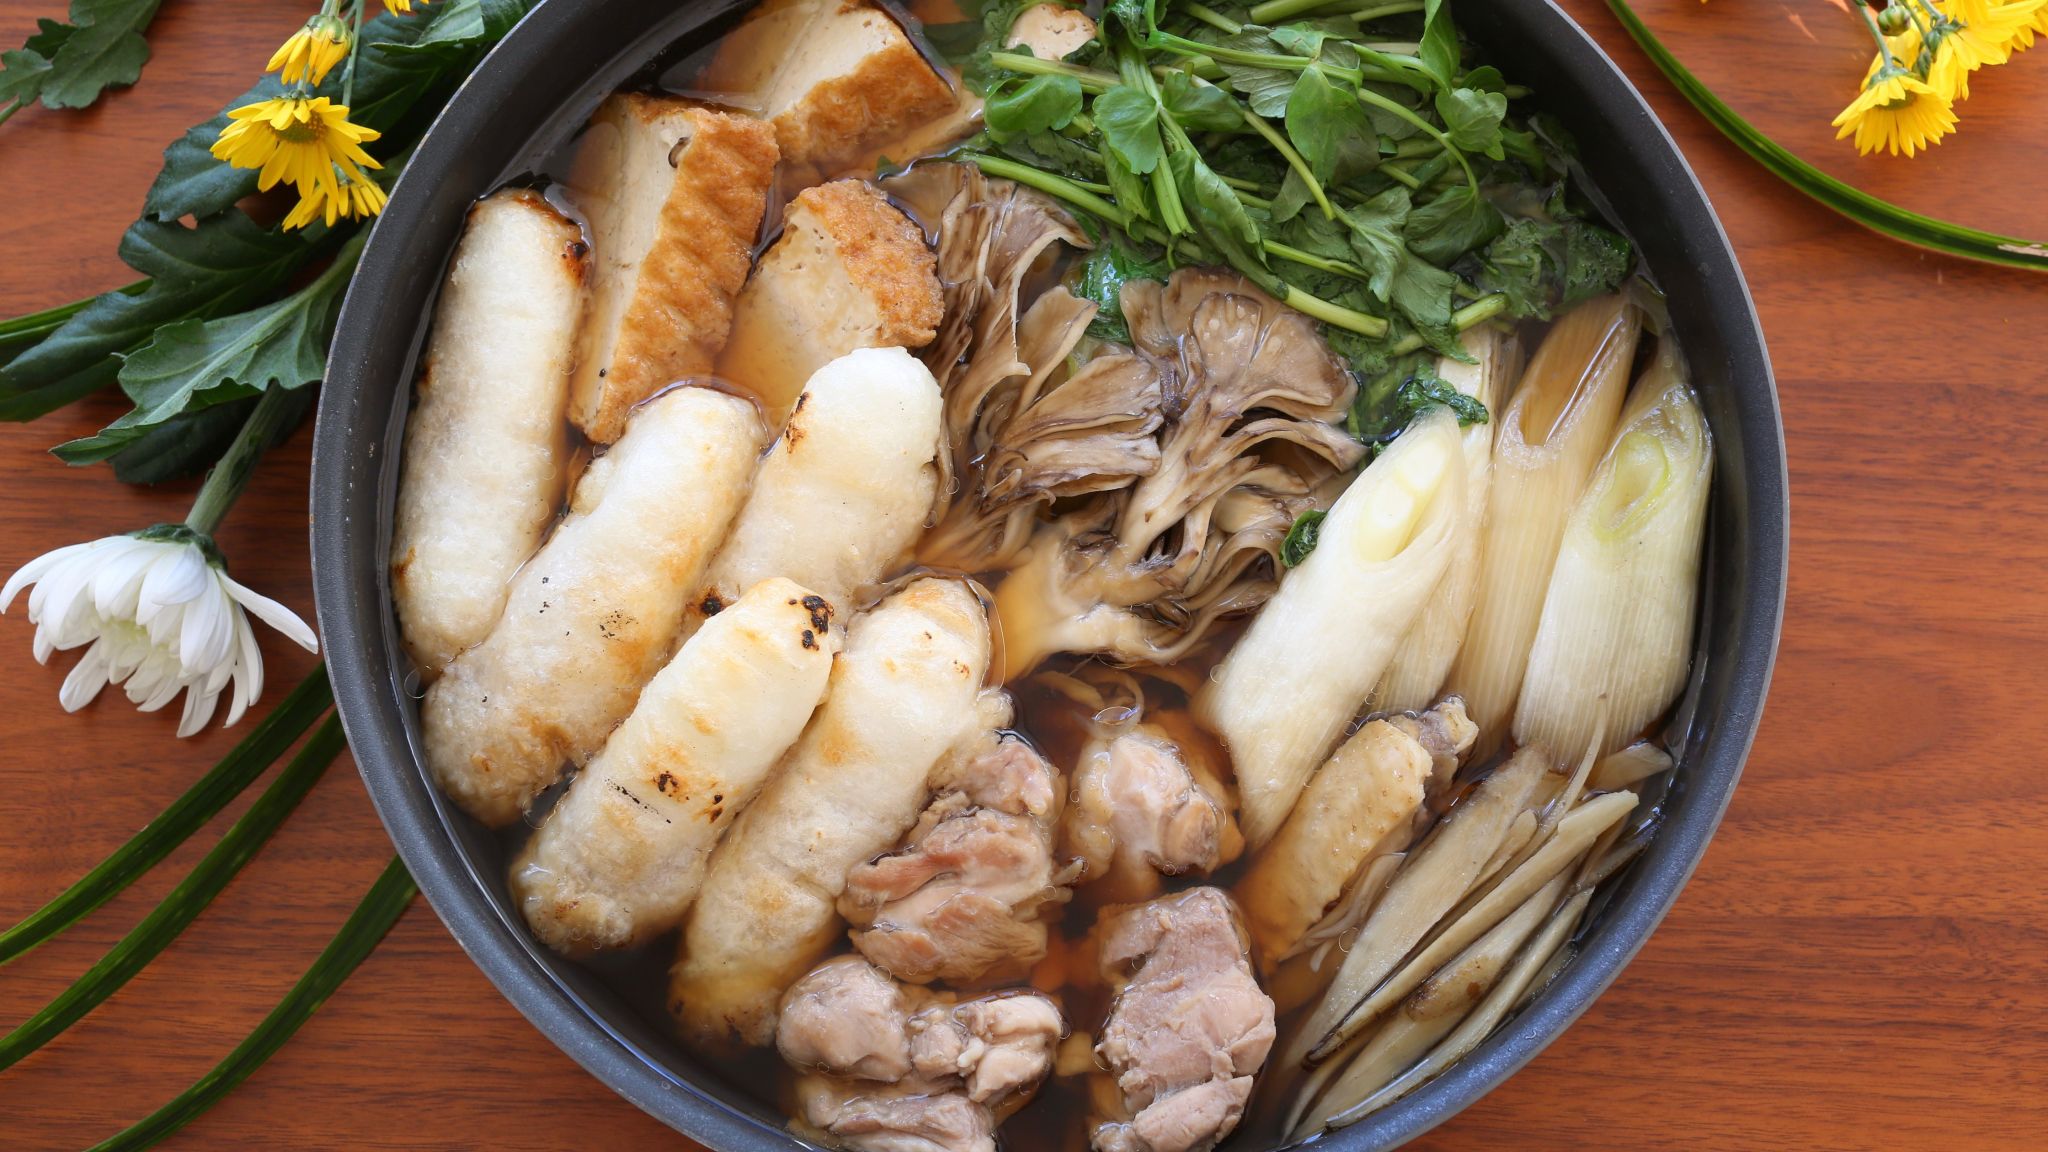 きりたんぽ鍋のレシピ 秋田県のご当地鍋の美味しい作り方 やまでら くみこ のレシピ